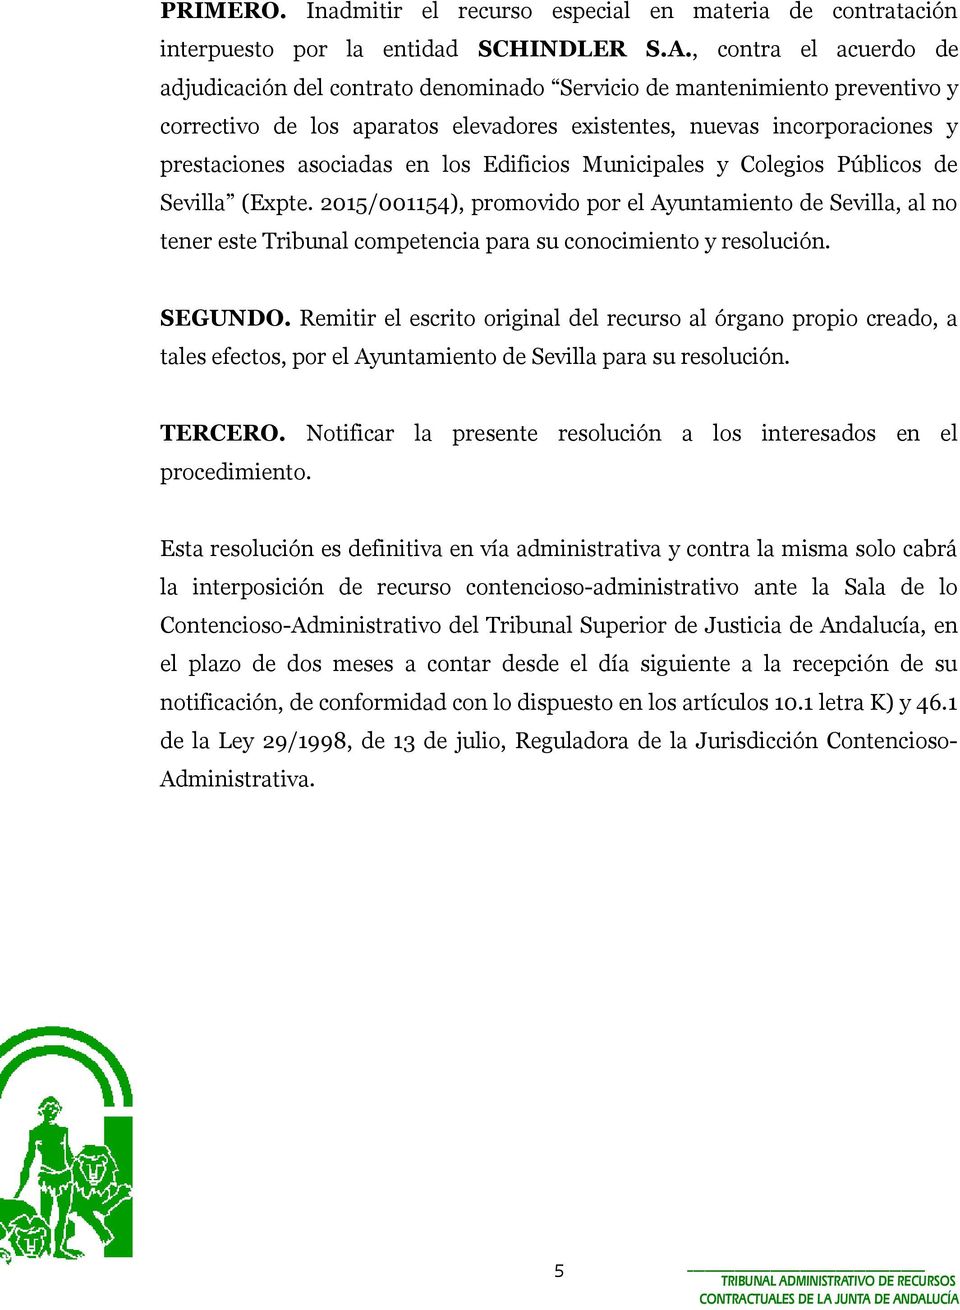 los Edificios Municipales y Colegios Públicos de Sevilla (Expte. 2015/001154), promovido por el Ayuntamiento de Sevilla, al no tener este Tribunal competencia para su conocimiento y resolución.